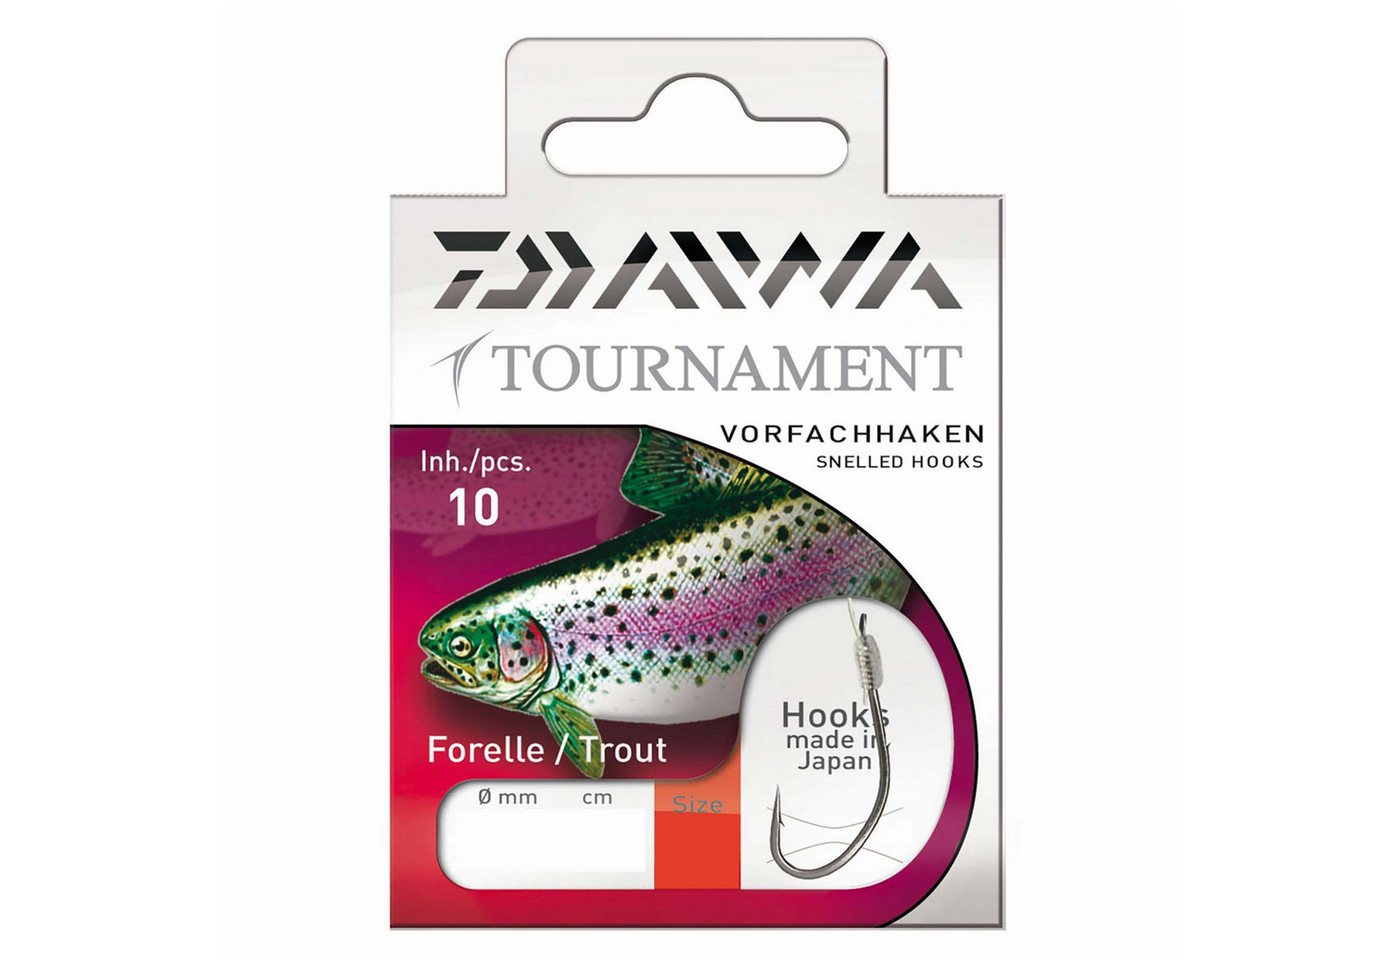 Daiwa Forellenhaken, Daiwa Tournament Forellenhaken 60,0cm Gr. 2 Gebundene Vorfachhaken von Daiwa